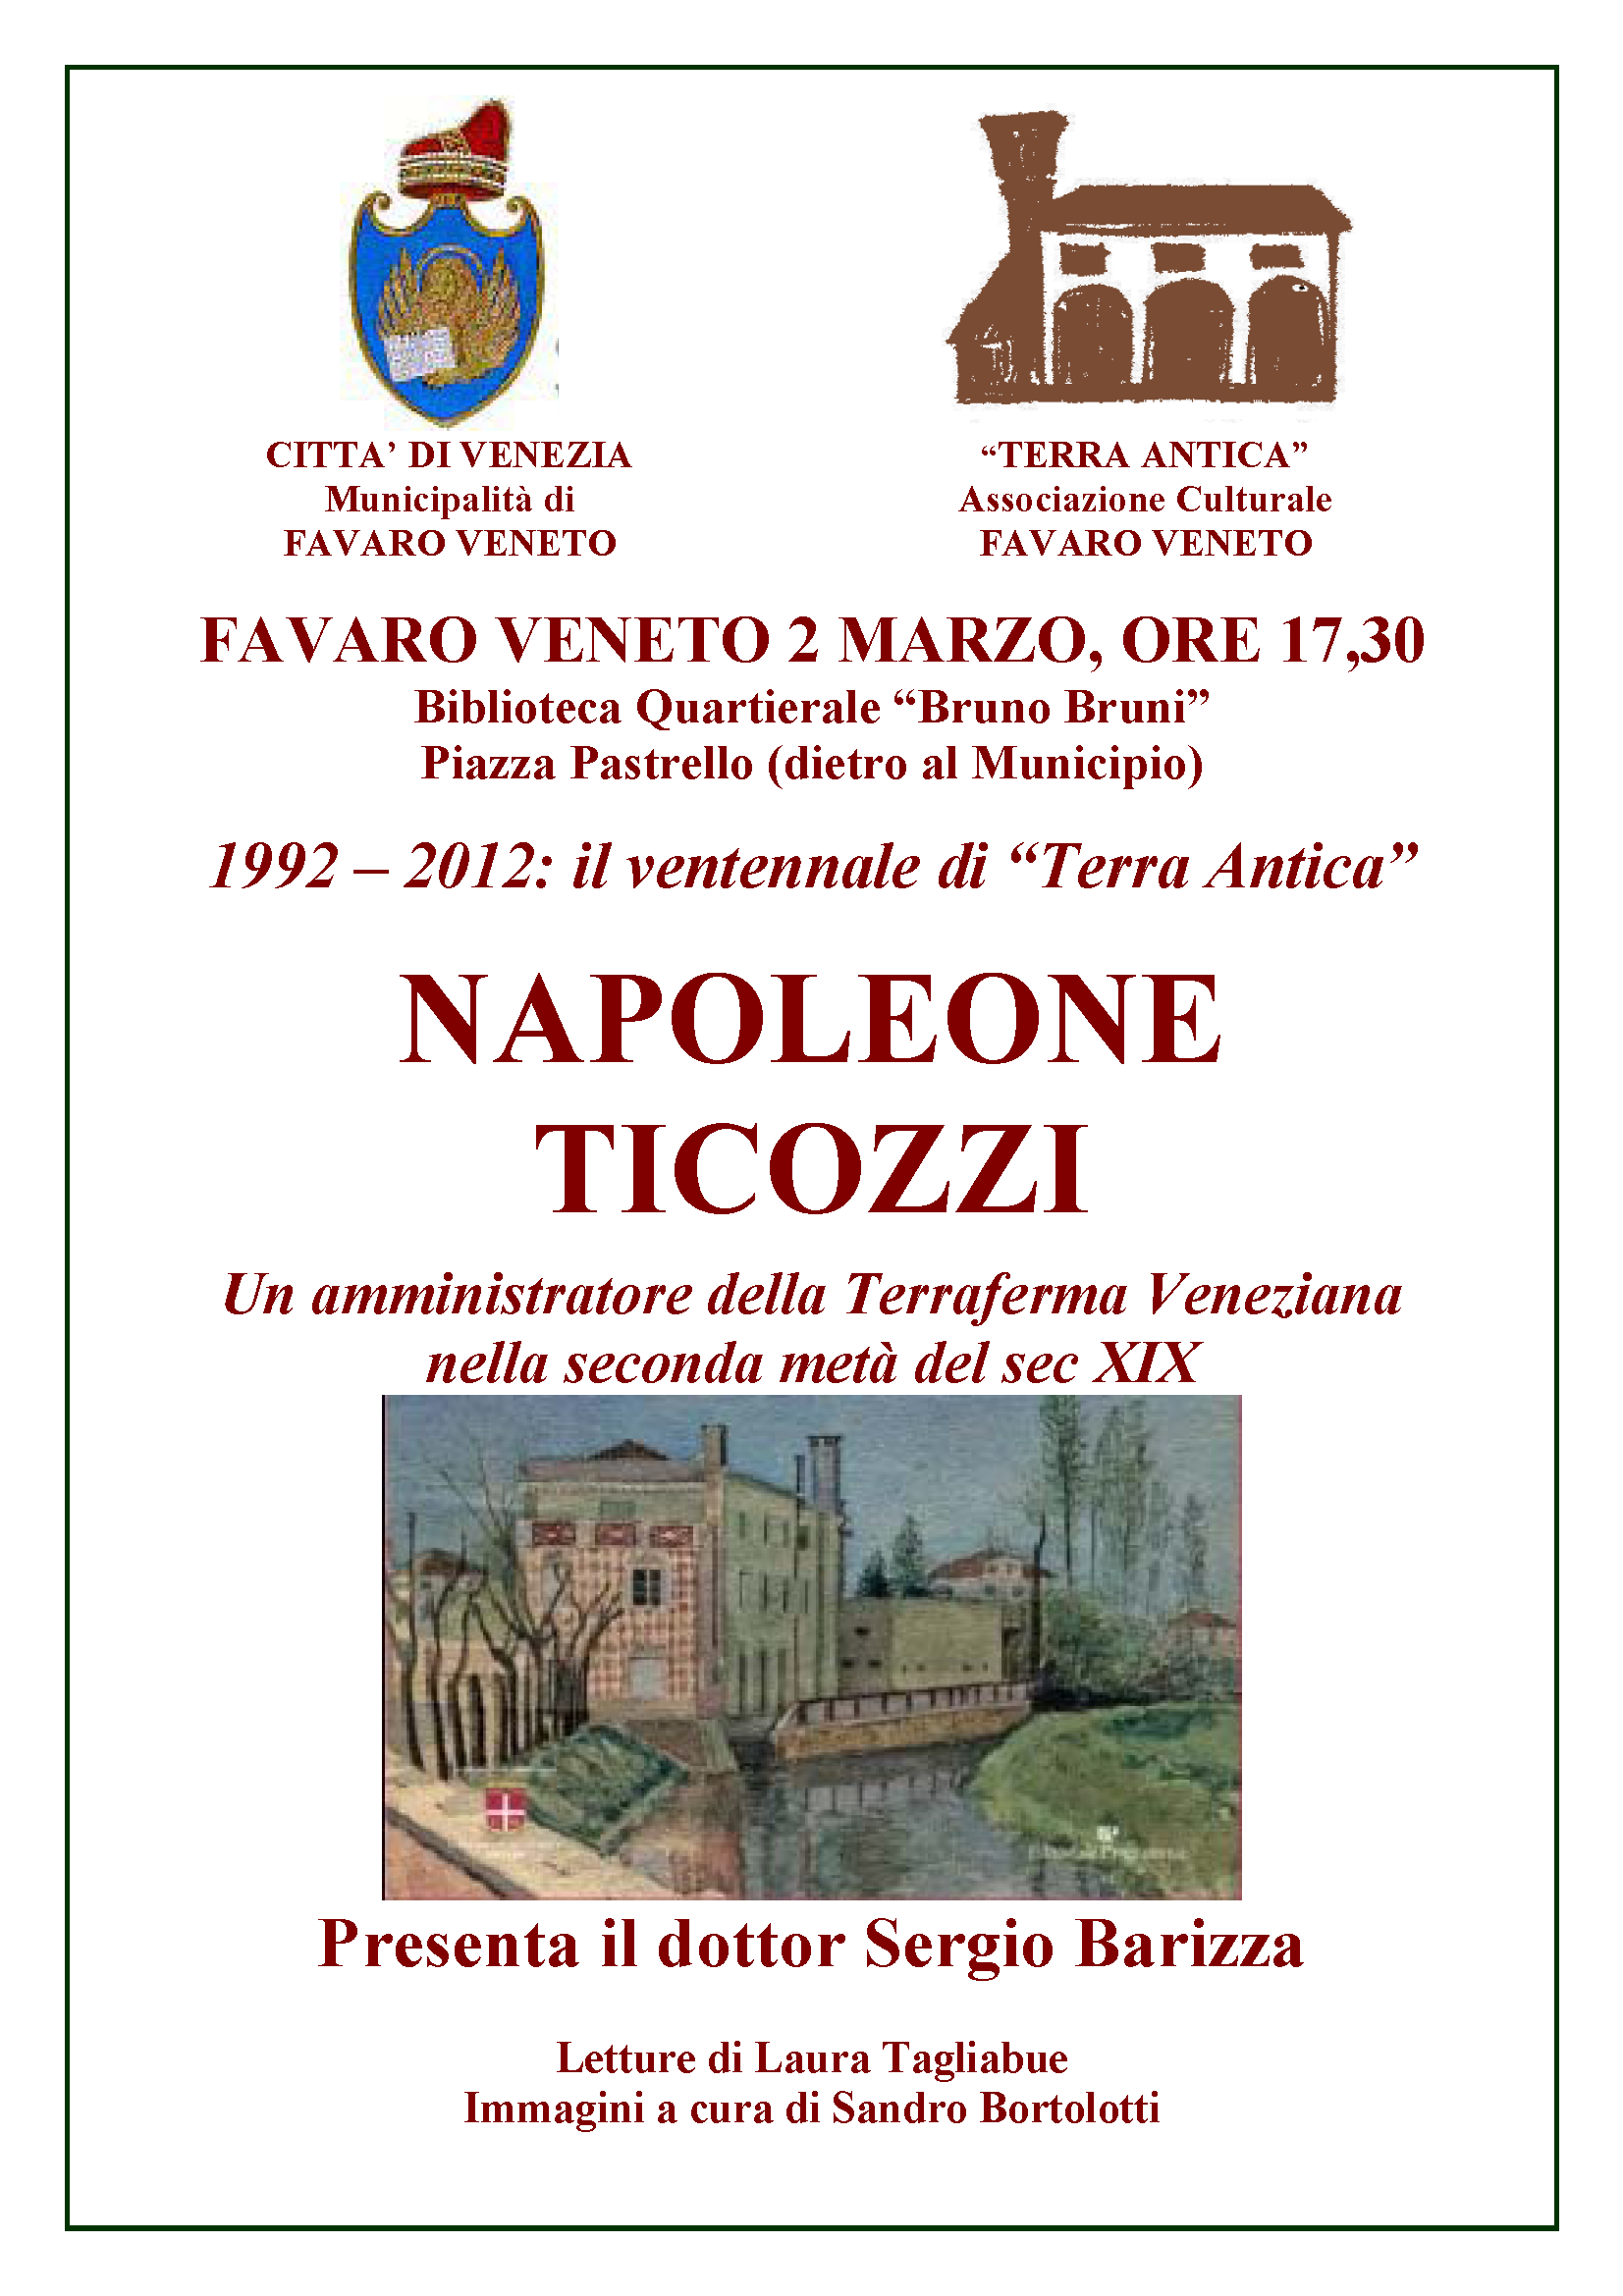 Conferenza di Sergio Barizza su Napoleone Ticozzi